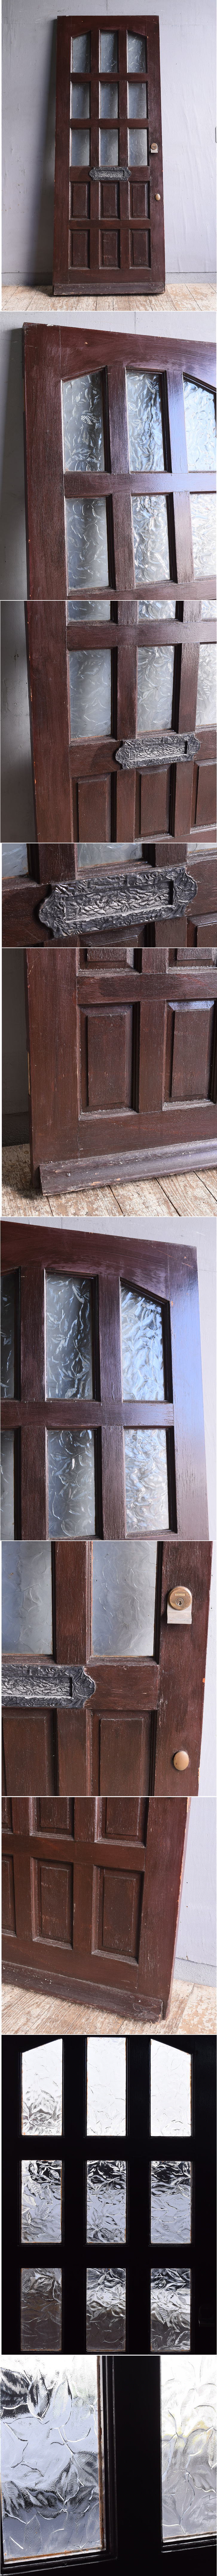 イギリス アンティーク 木製ドア 扉 建具 12013